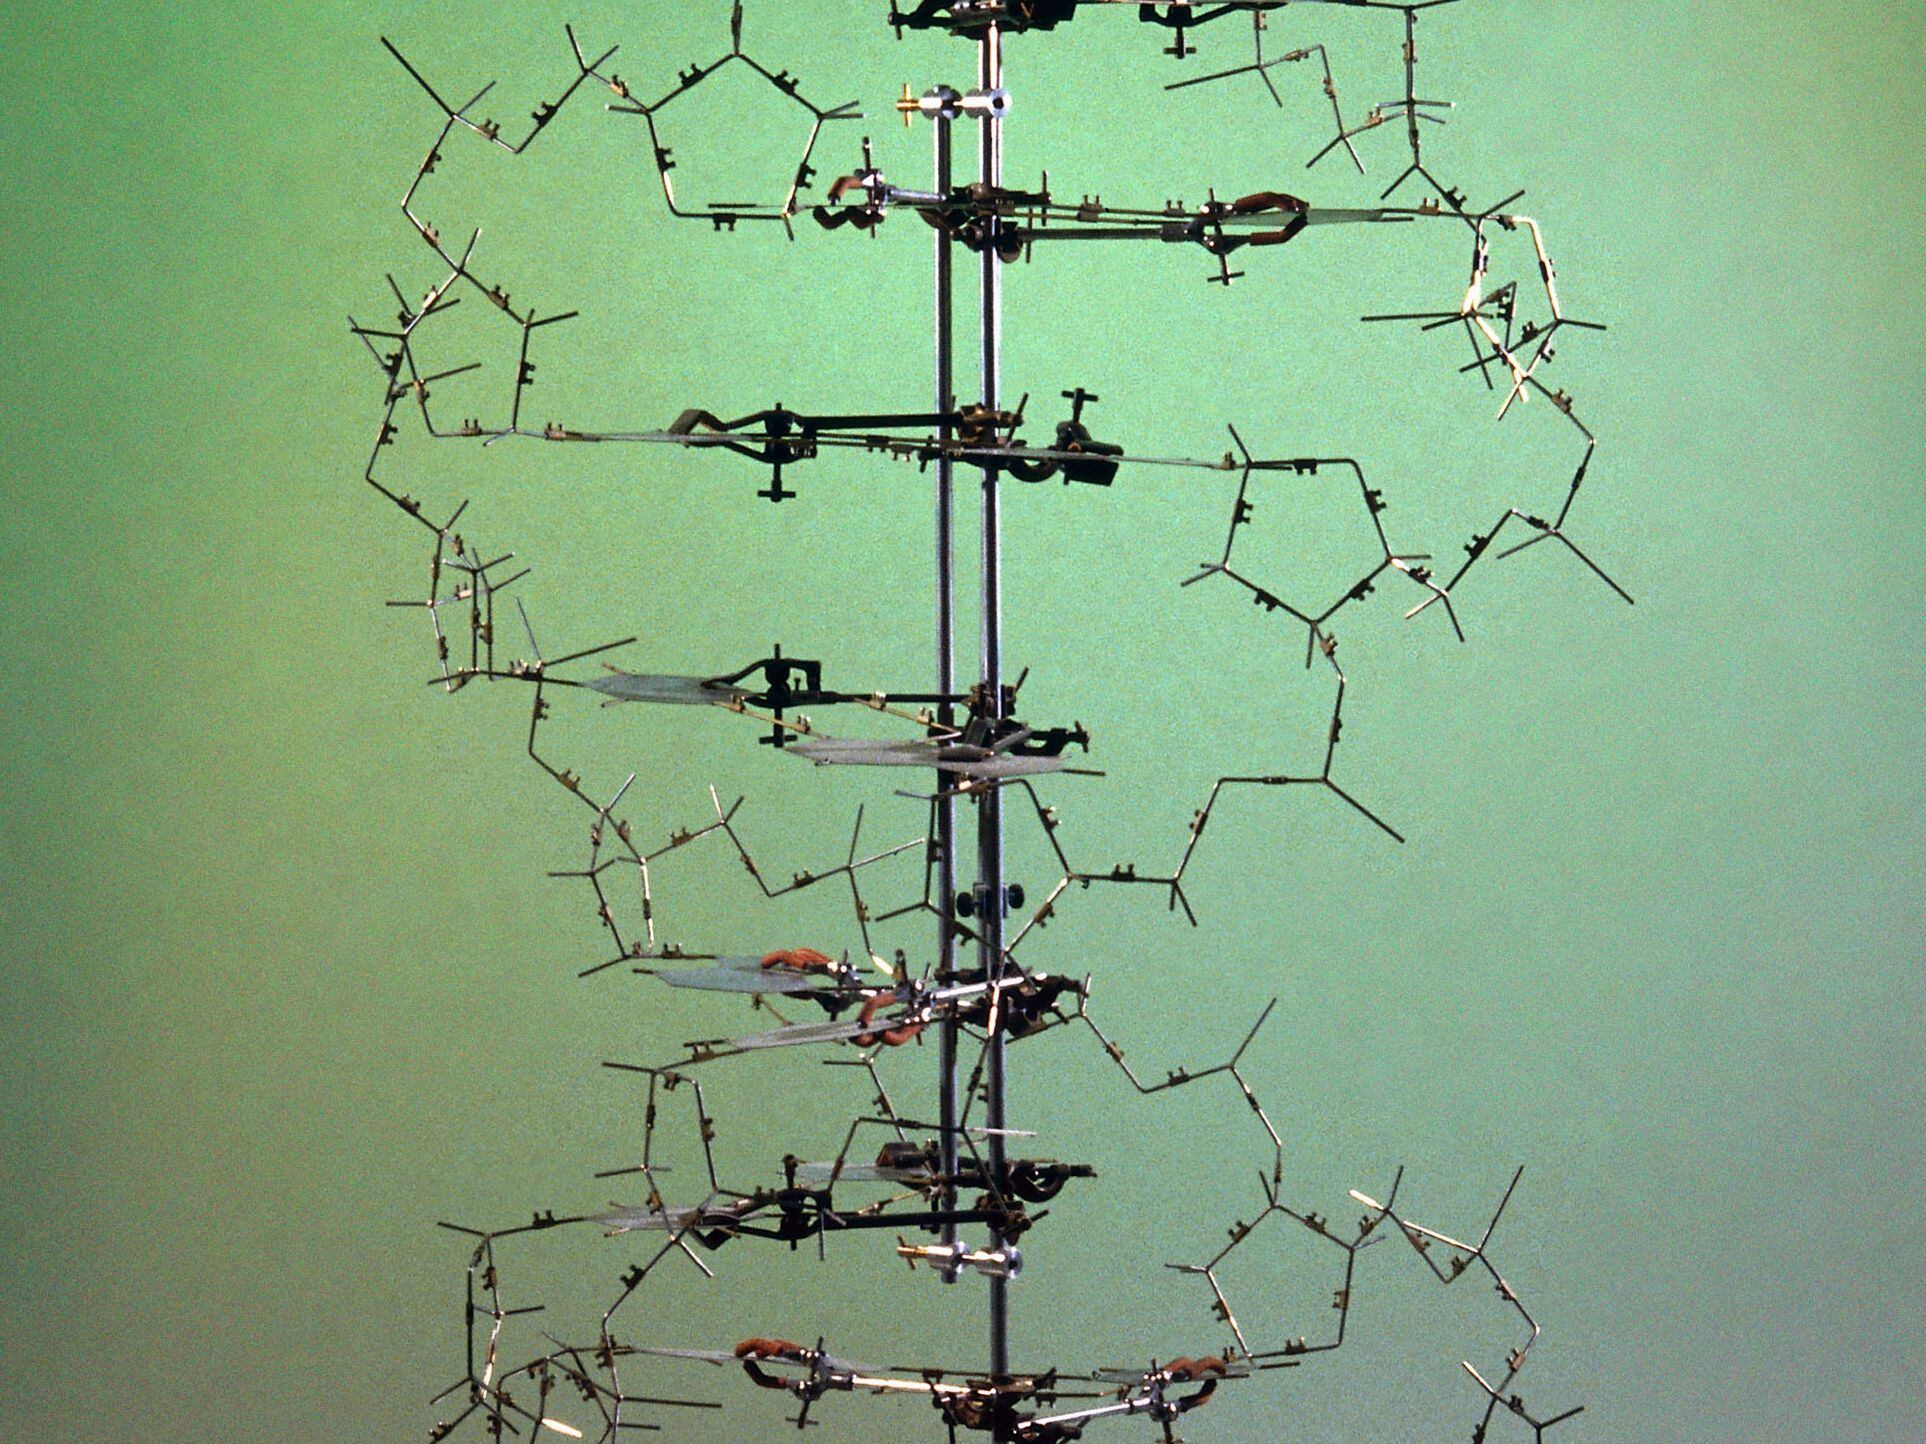 Réplica del modelo original que usaron Francis Crick y James Watson para deducir la estructura en doble hélice del ADN.